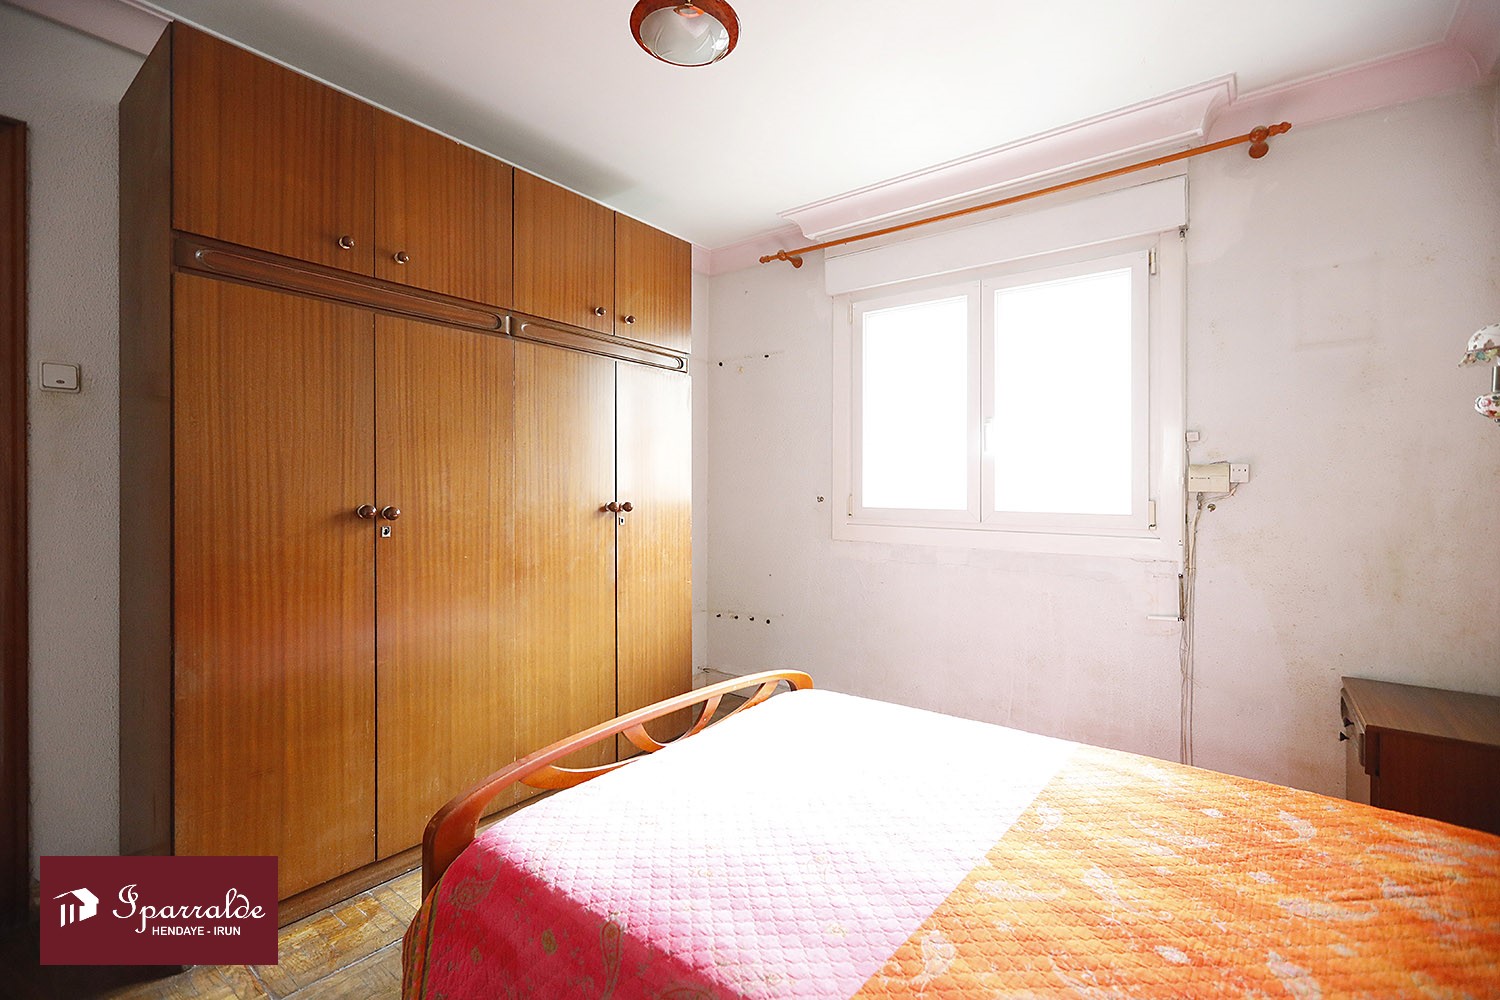 Vivienda de tres habitaciones a reformar en zona próxima a Anzarán. Ascensor